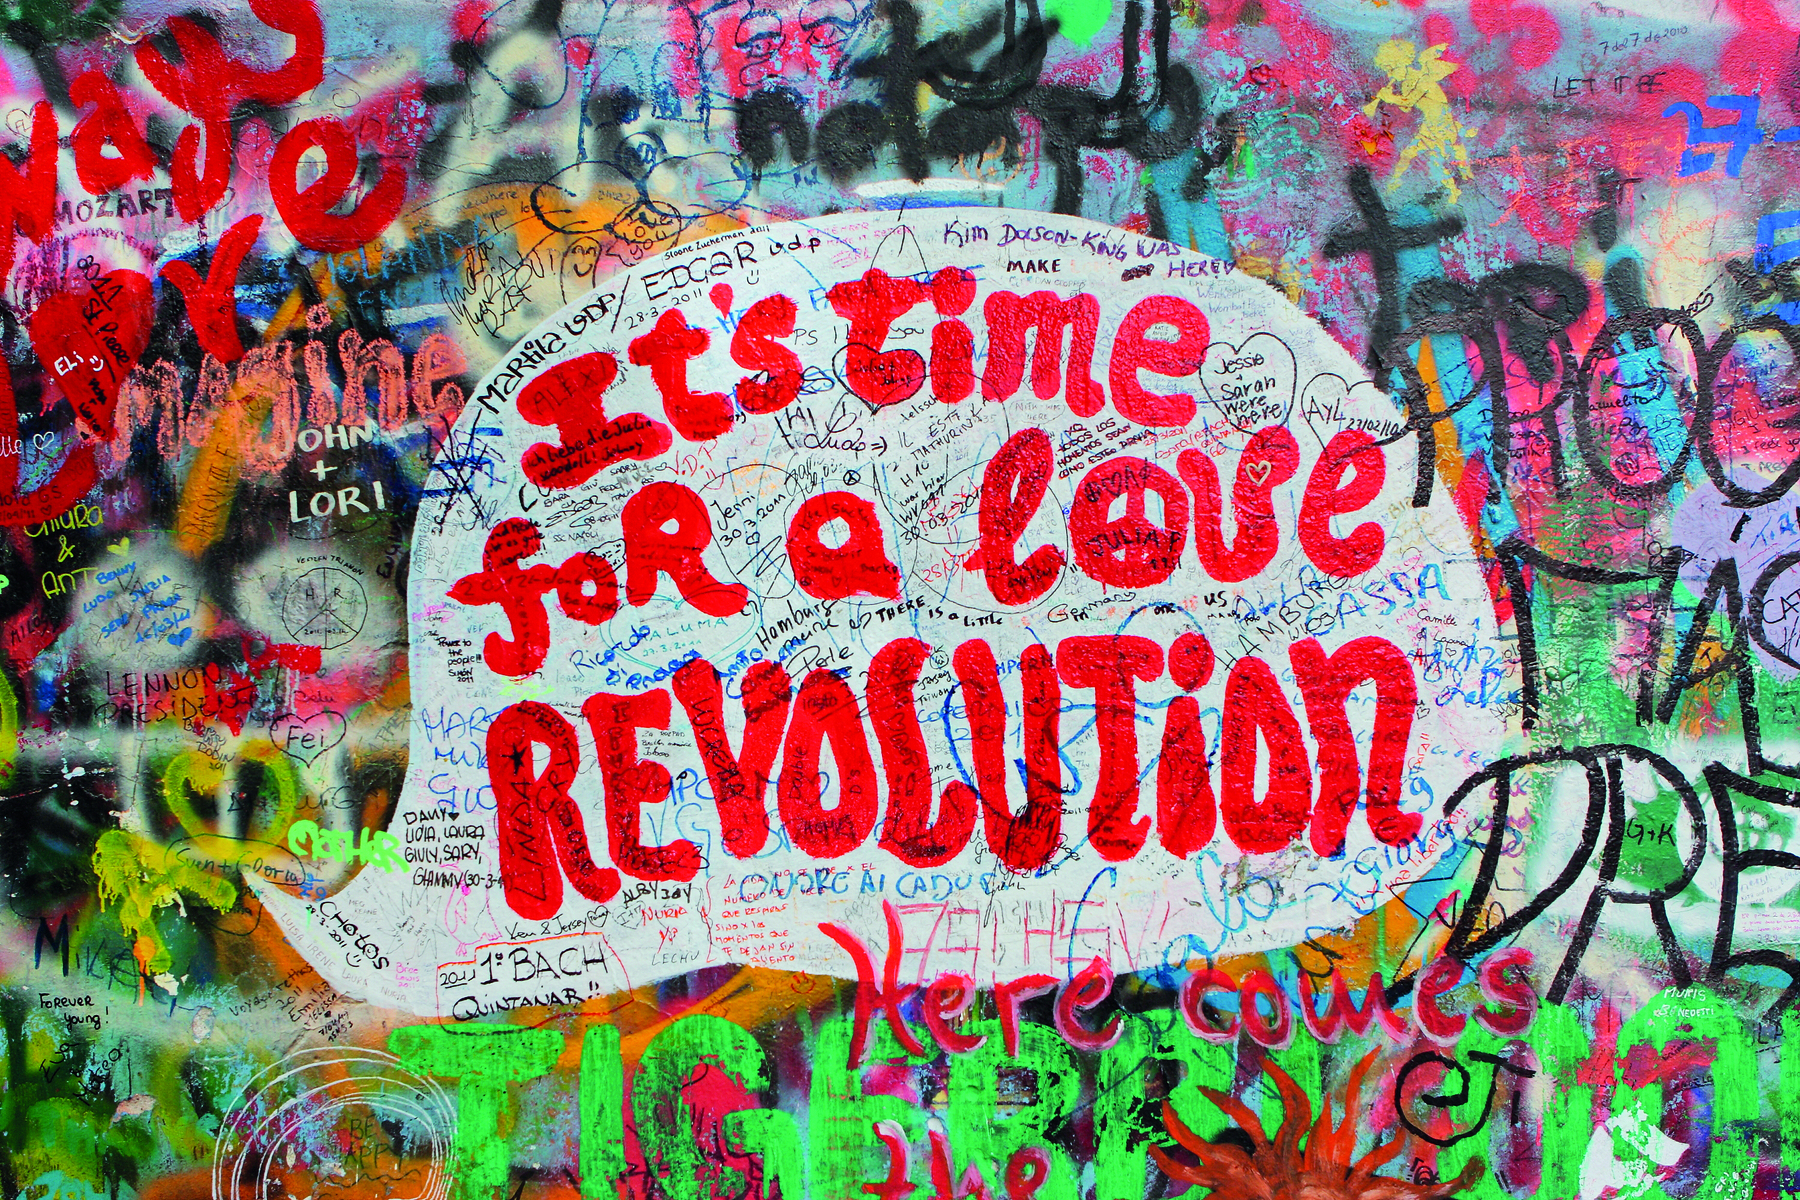 Fotografia. Detalhe do muro decorado com pinturas coloridas. No muro, lê-se IT'S TIME FOR A LOVE REVOLUTION escrito em tons de vermelho. A letra O da palavra LOVE tem o símbolo de paz e amor.